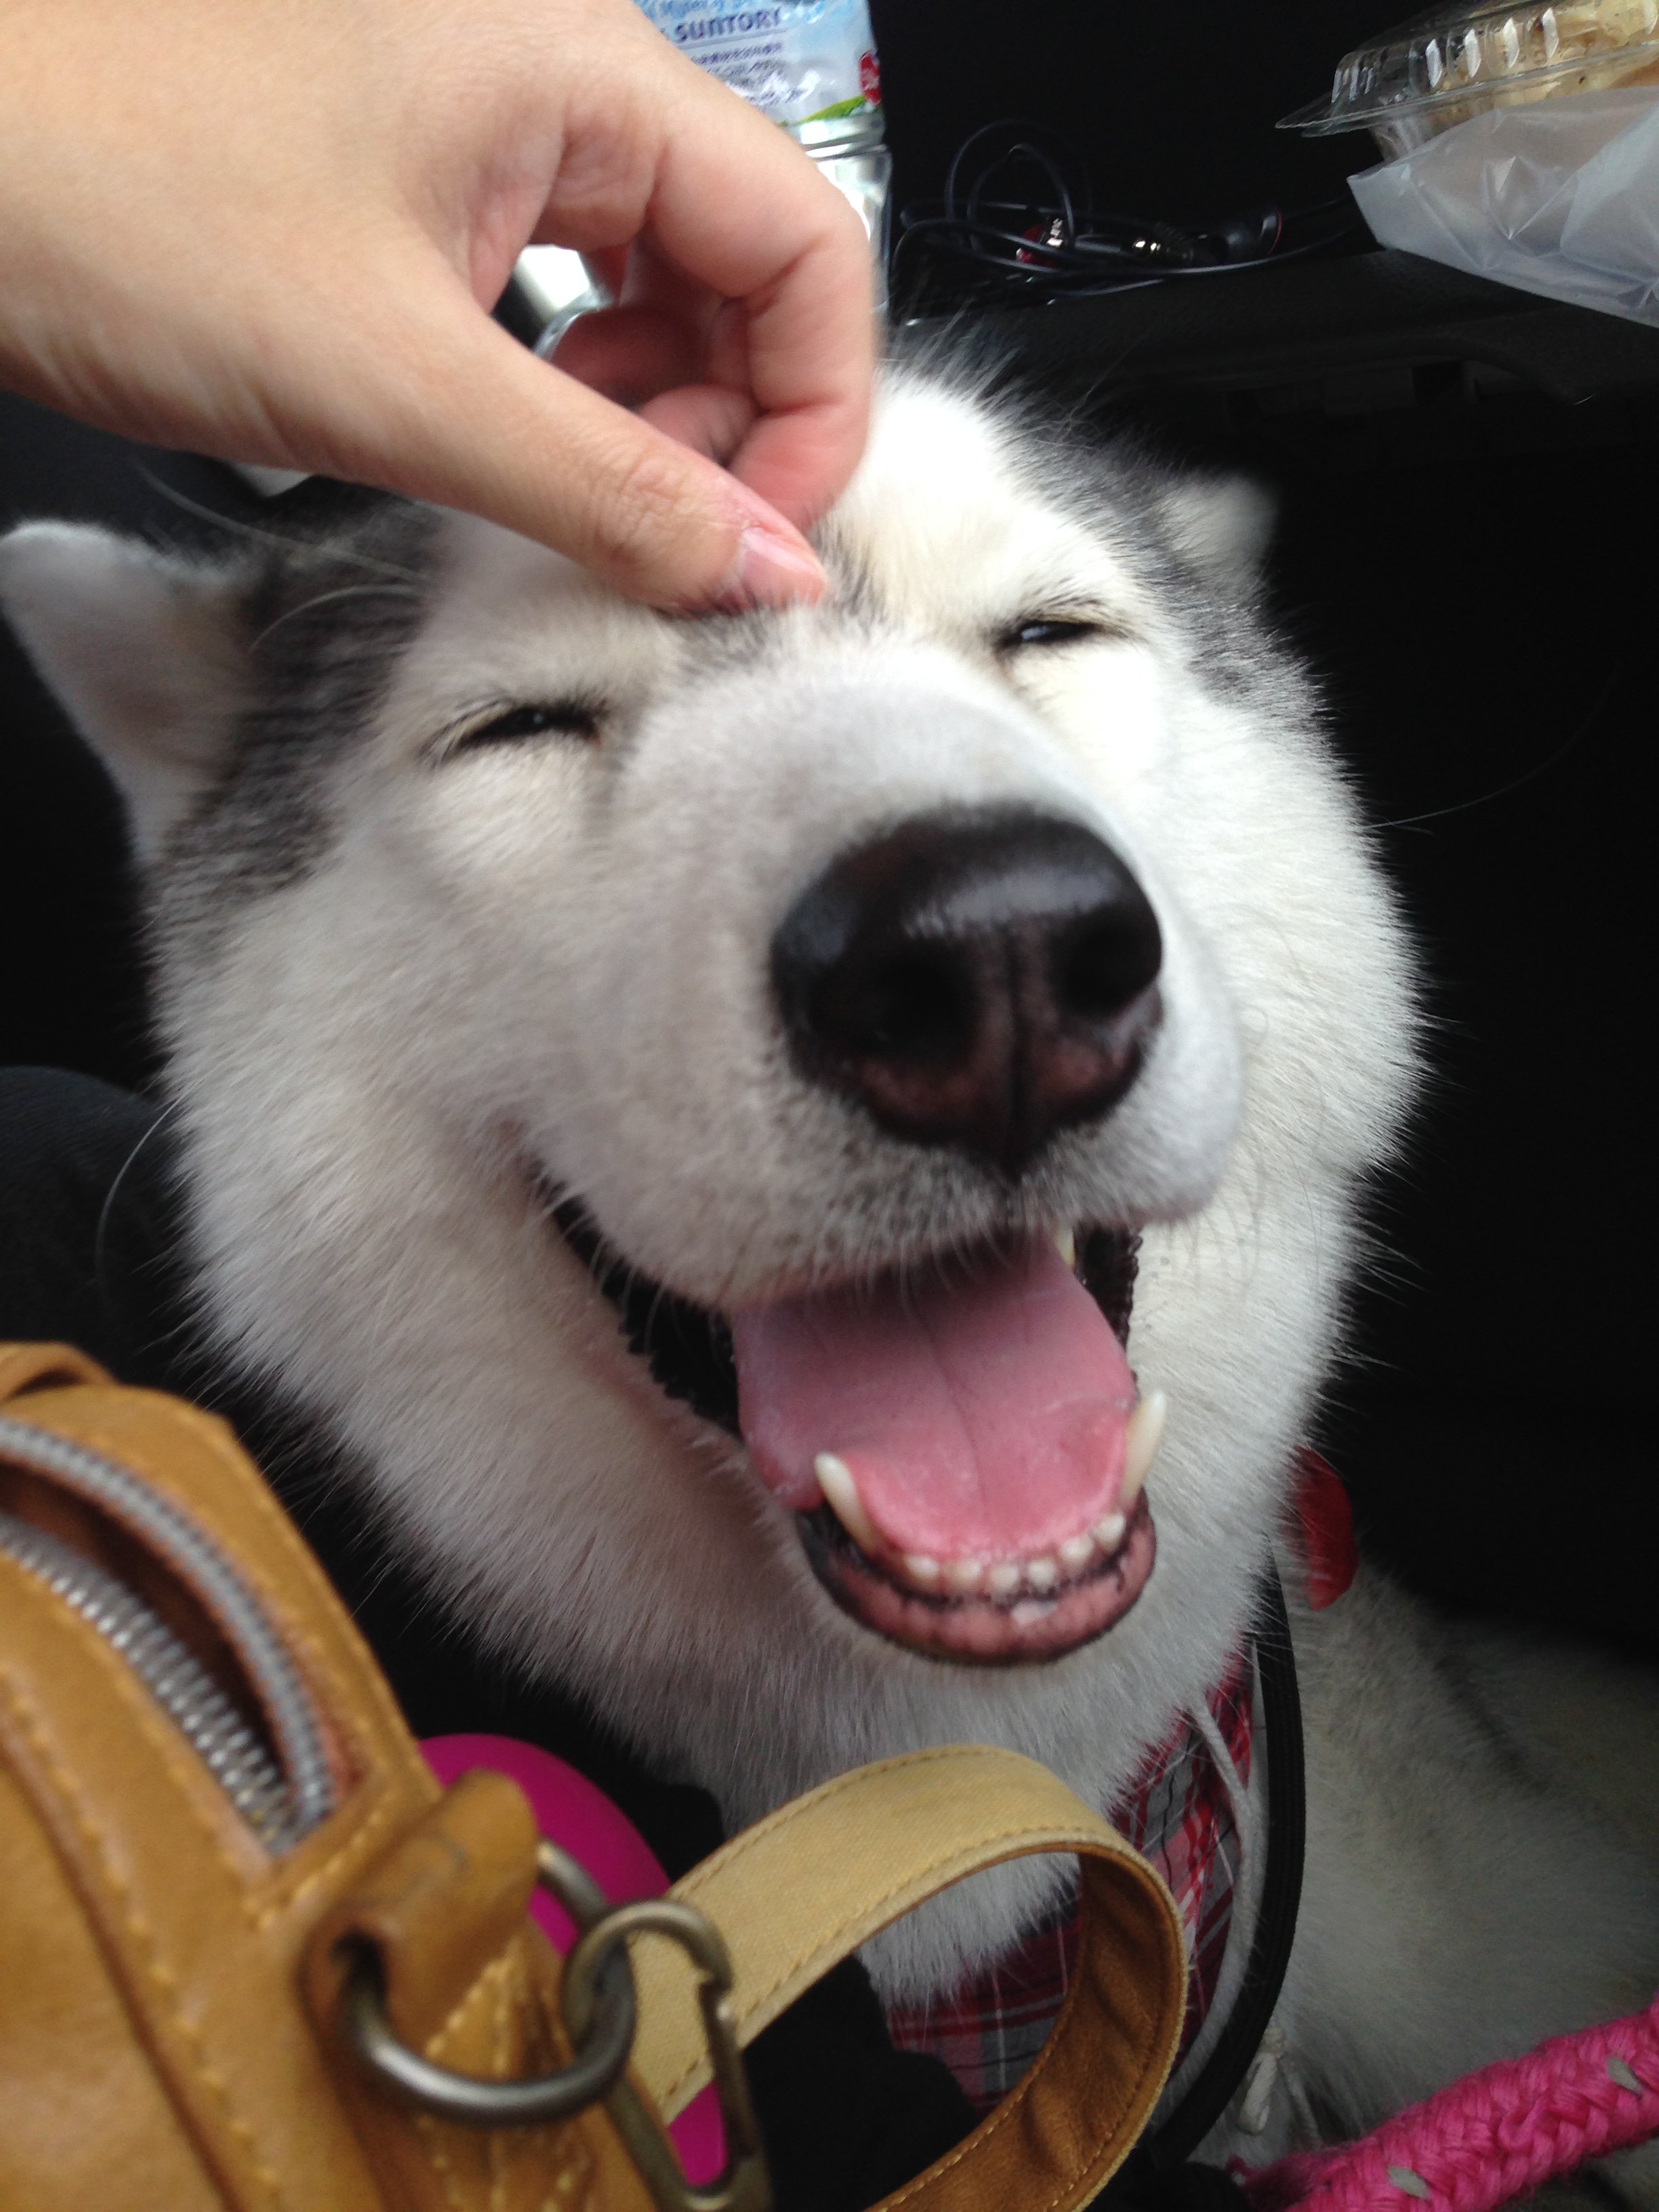 ハマジ めっちゃ幸せそうな顔してる犬に育った T Co Zbkvfhfkz3 Twitter